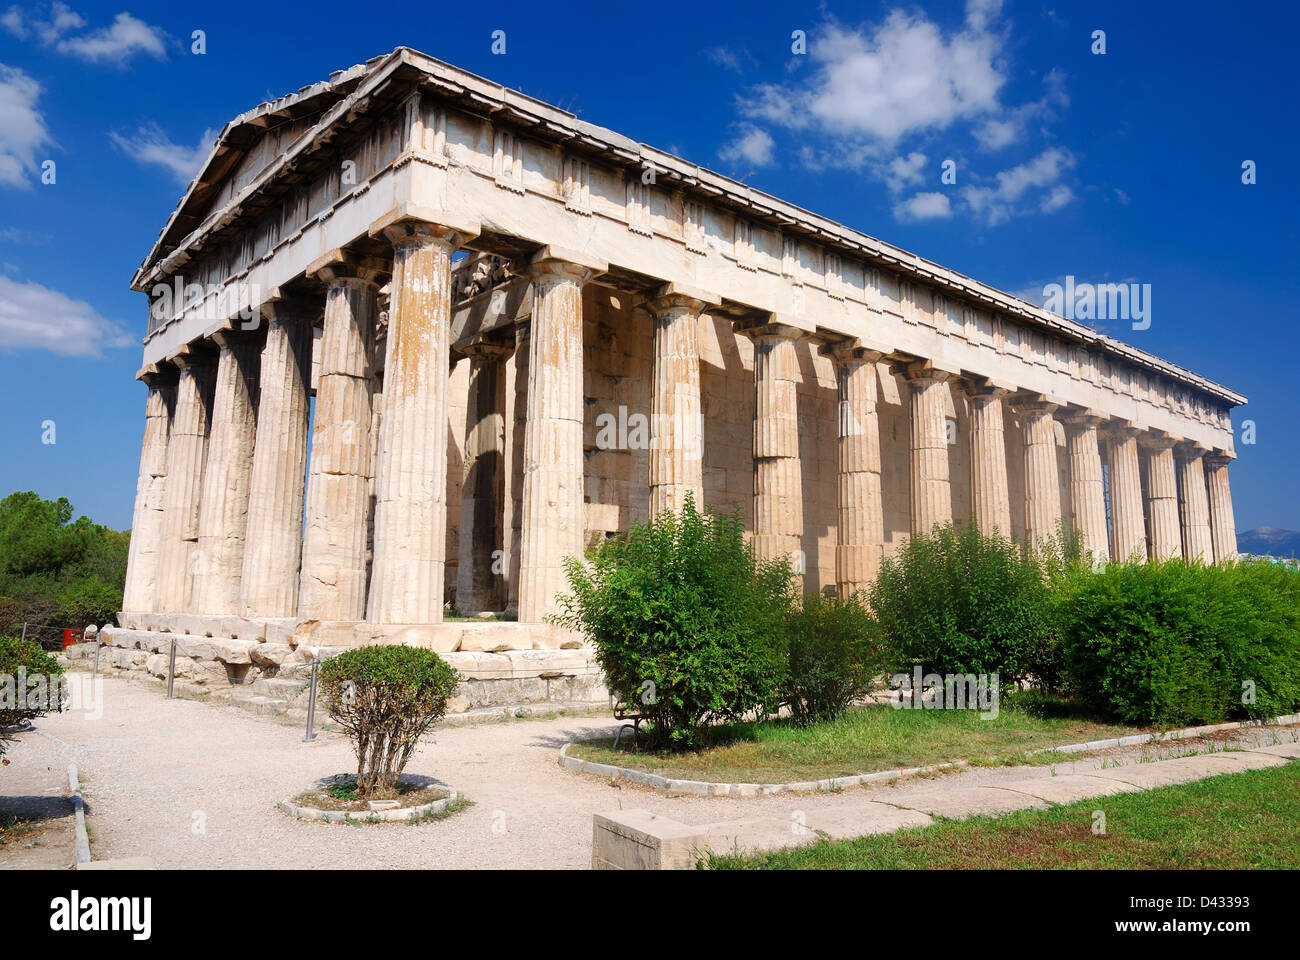 Tempel des Hephaistos, ist der am besten erhaltenen antiken griechischen Tempel, 415 v. Chr. erbaute. Athen, Griechenland. Stockfoto